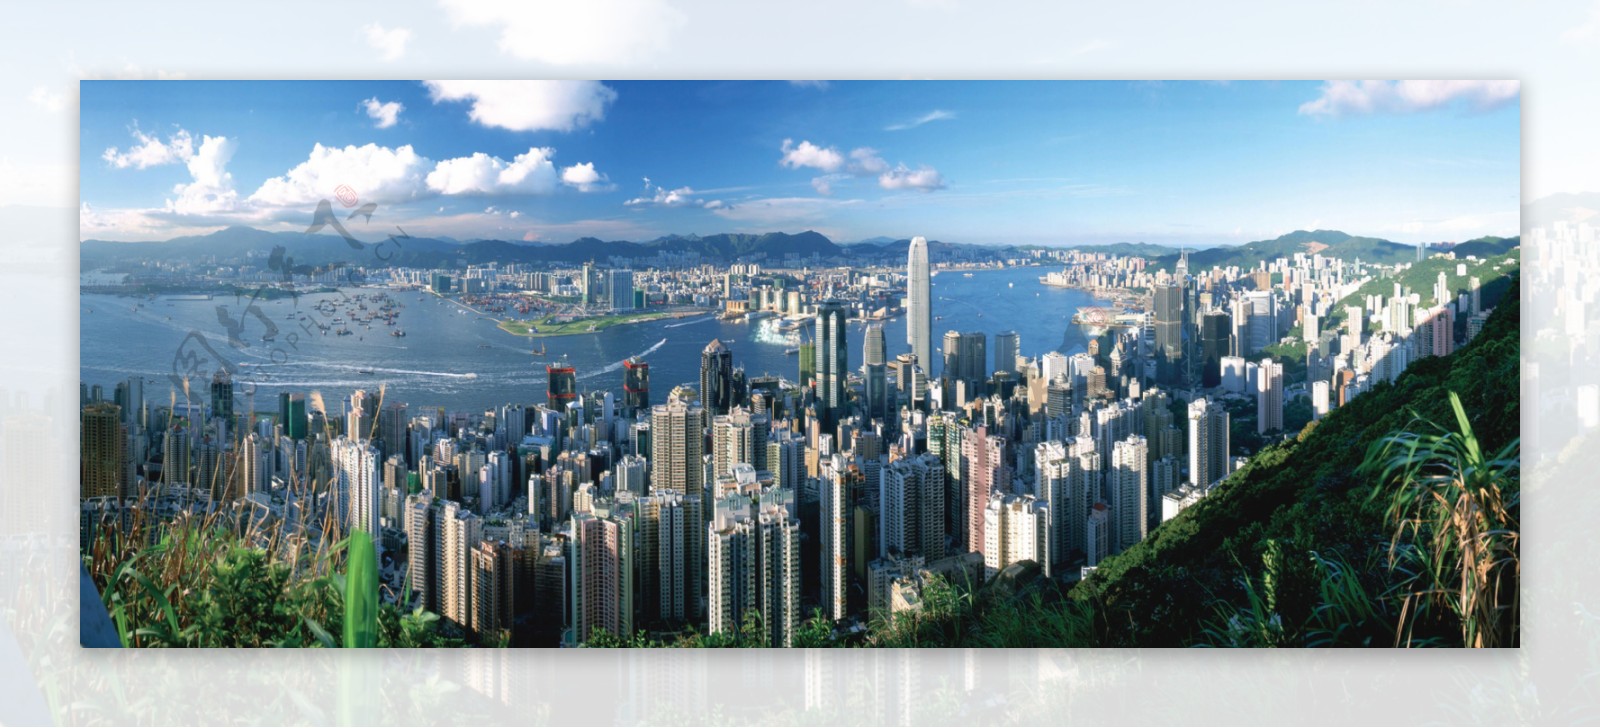 从山上俯视整个香港城市景观